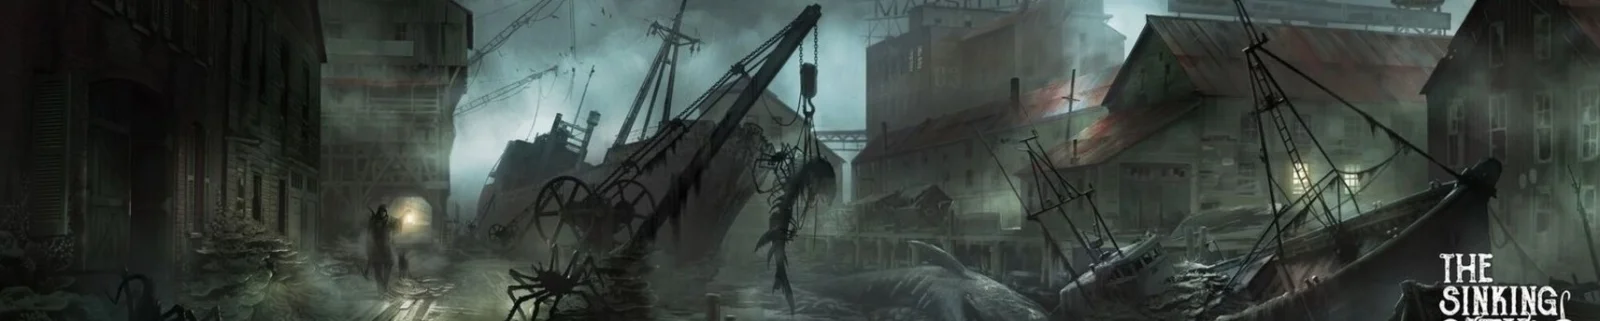 洛式恐怖游戏《沉没之城》确定为开放世界